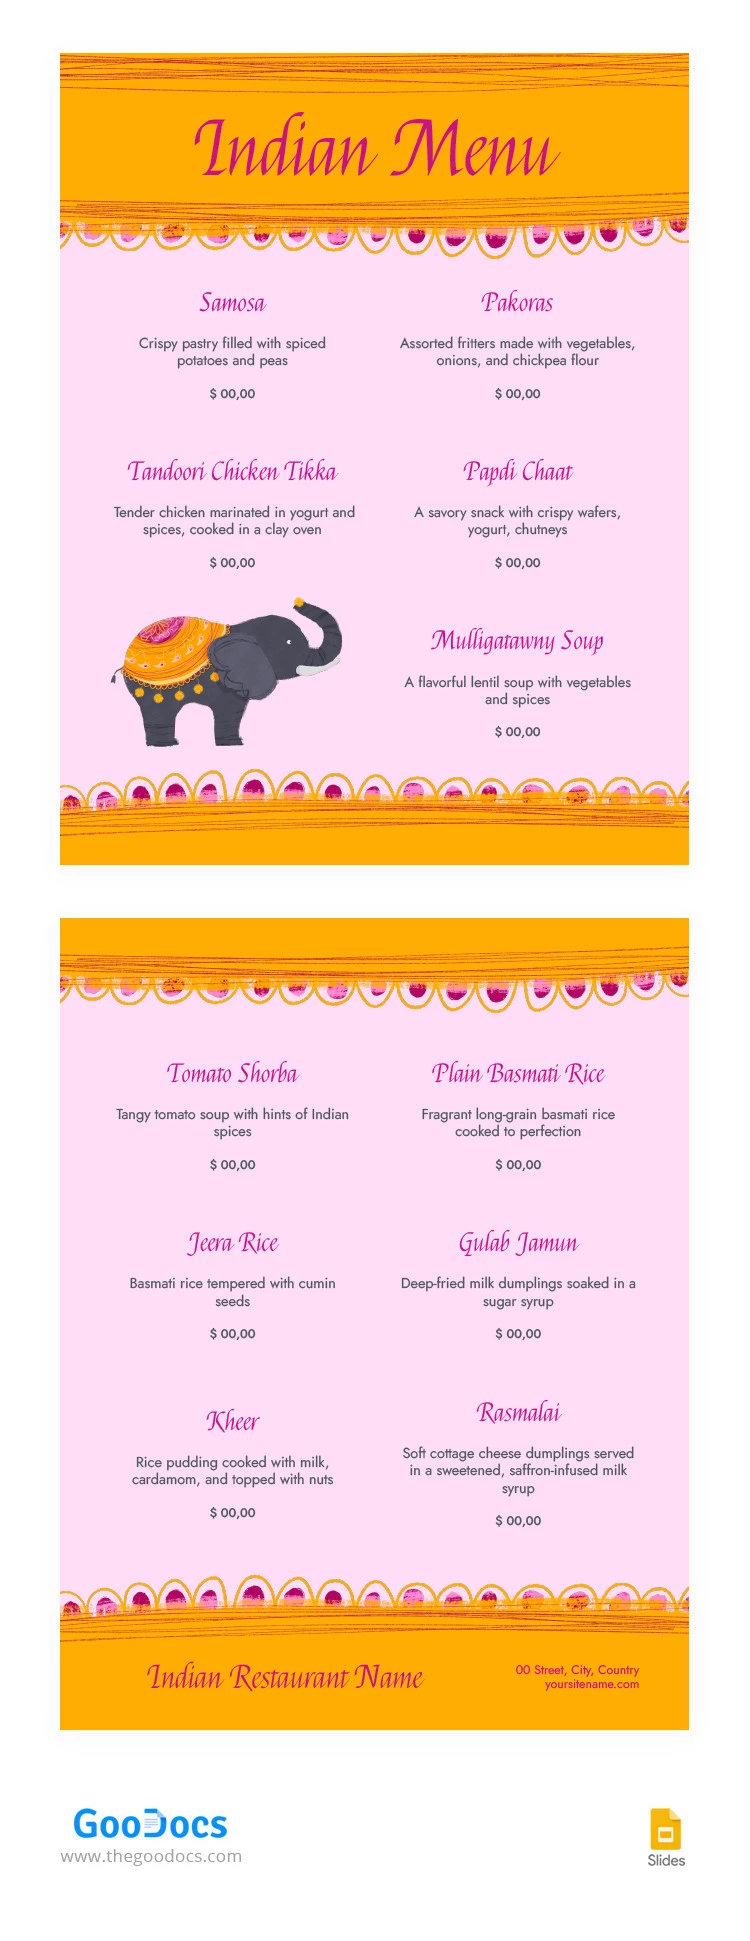 Menú del restaurante indio Amarillo y lindo - free Google Docs Template - 10066273